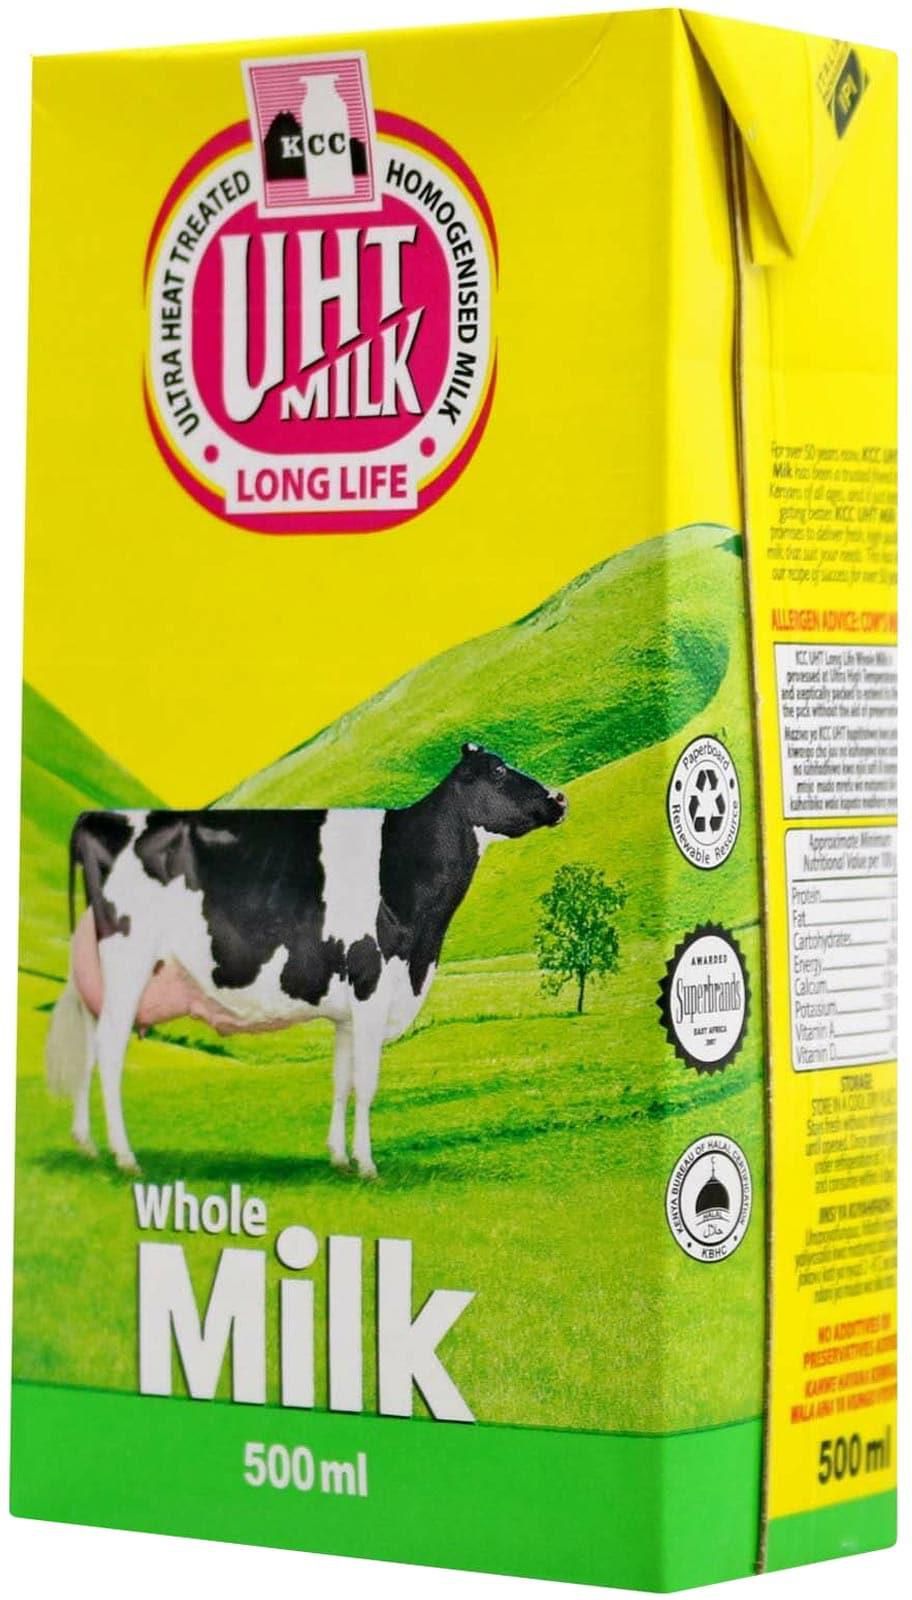 Kcc Uht Milk Full Cream 500Ml  Long Life